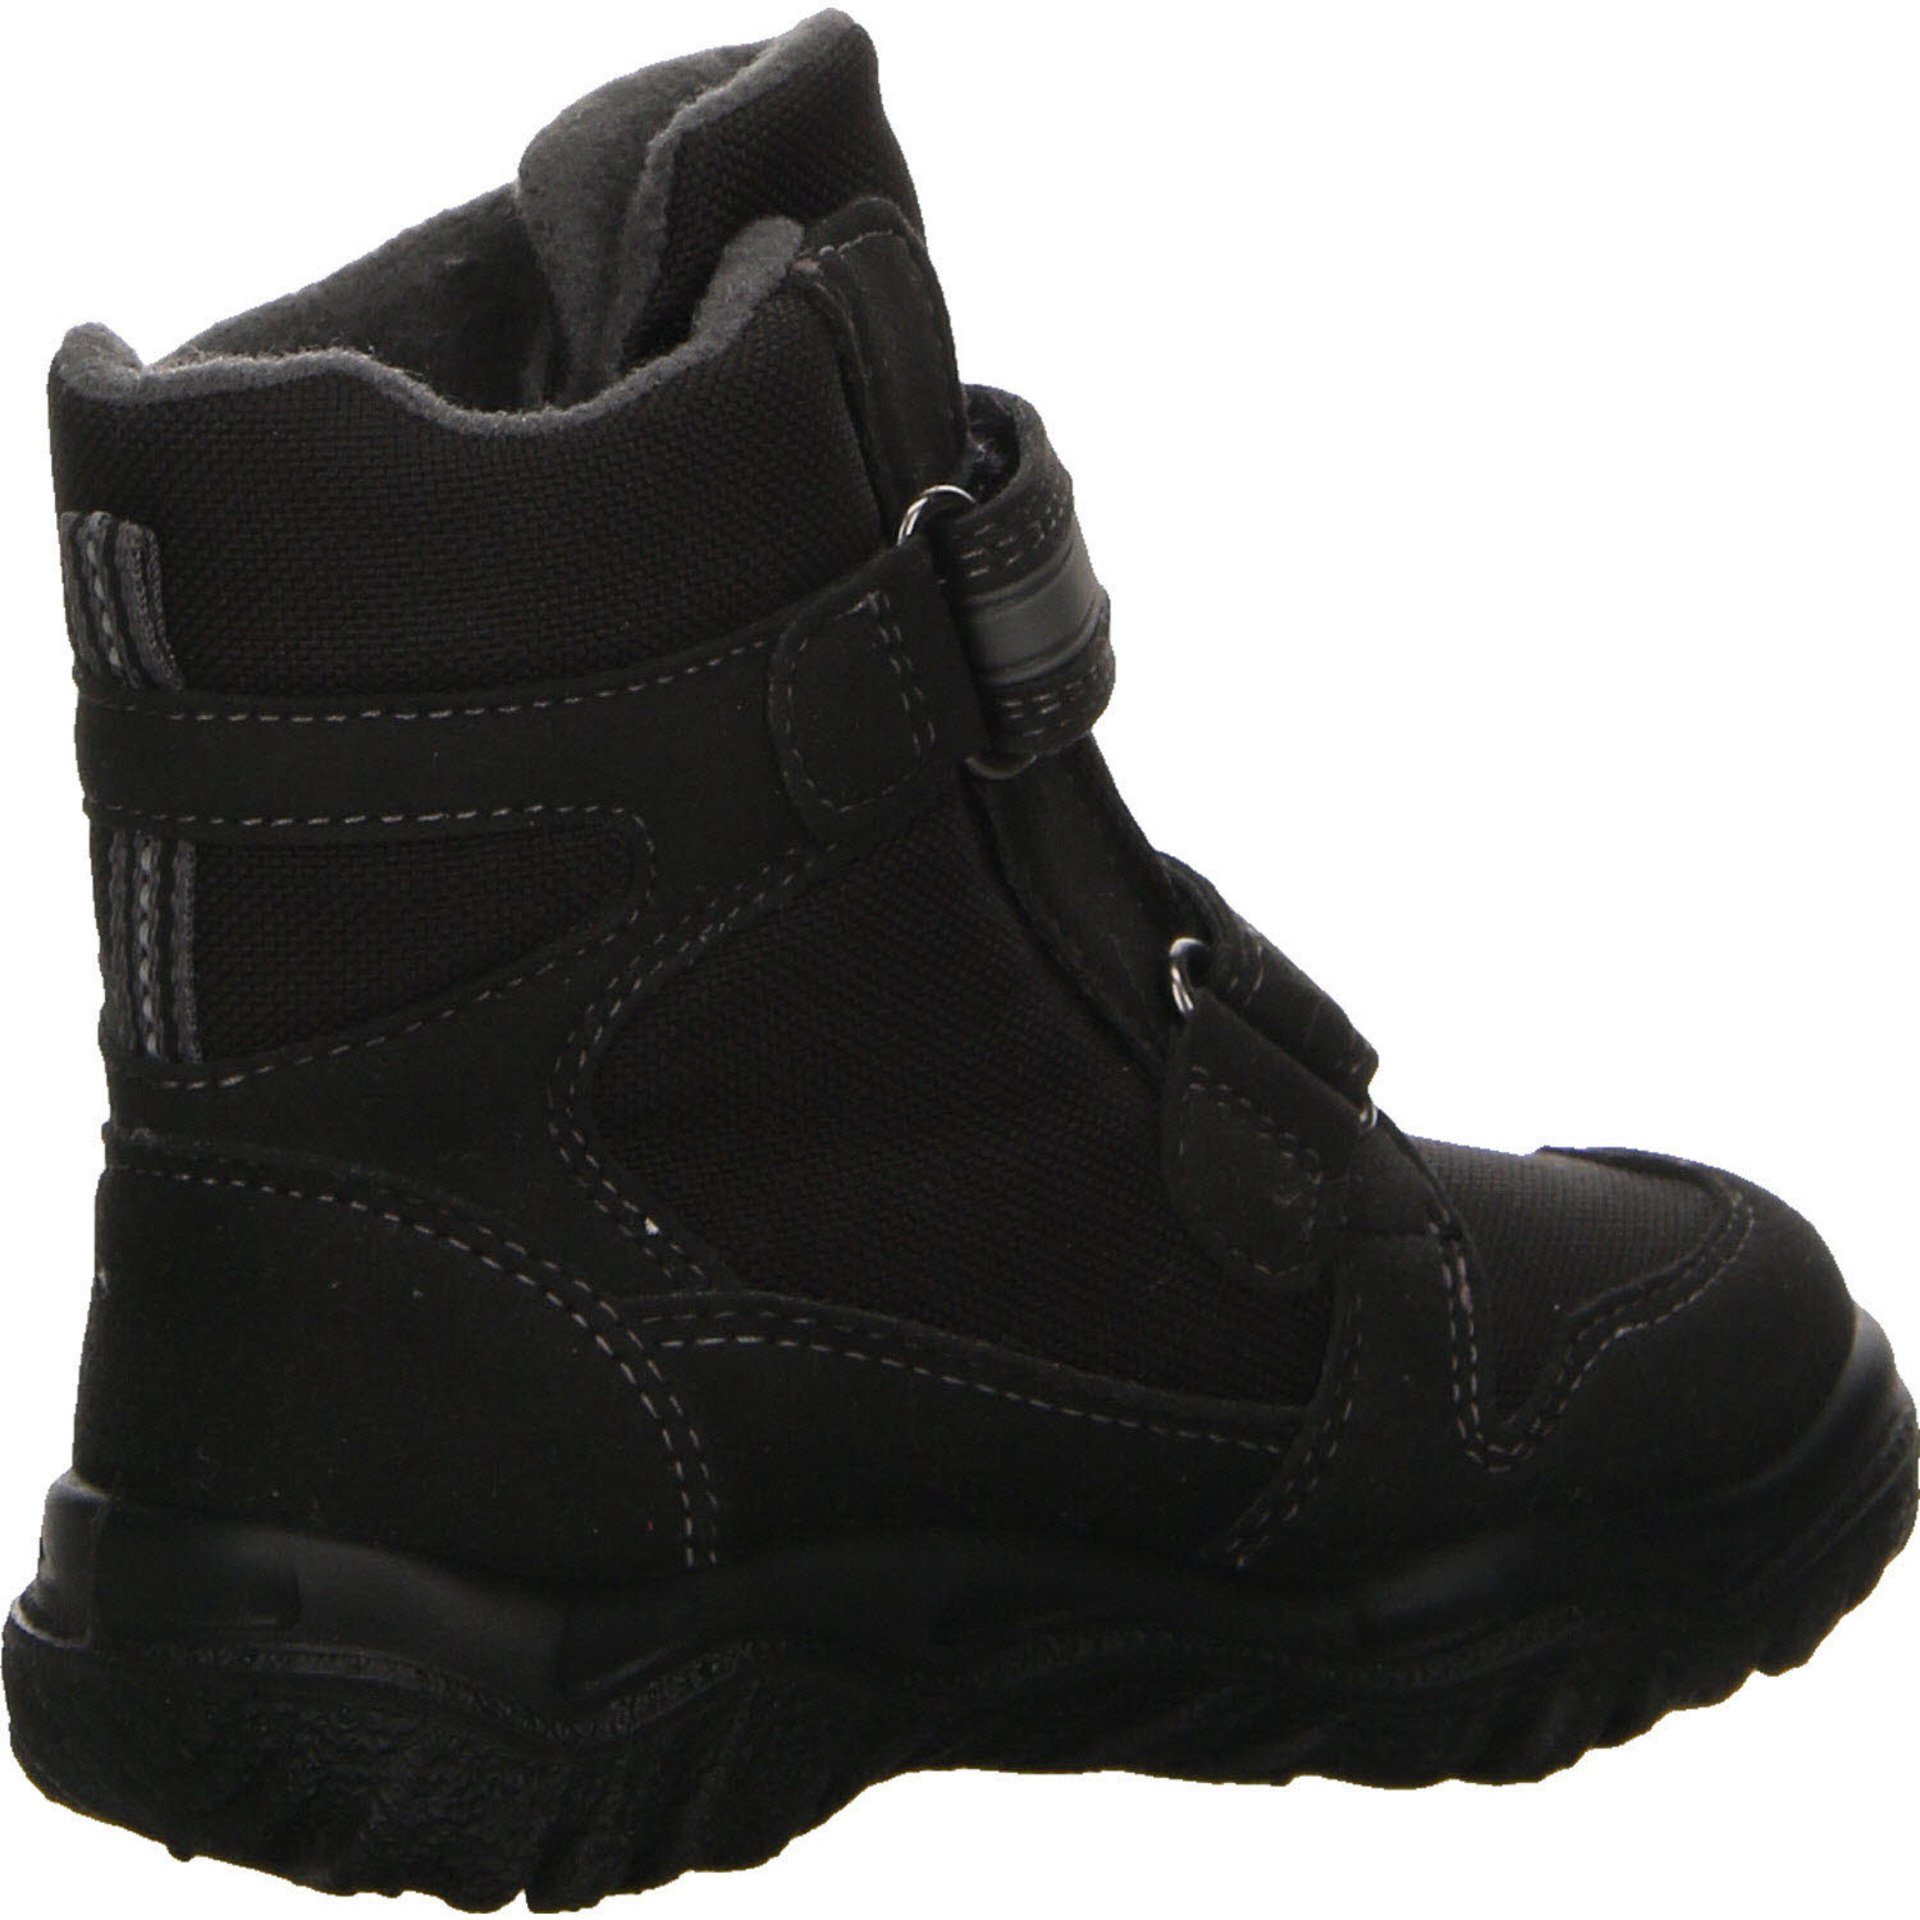 Stiefel Schuhe Husky grau Gore-Tex Synthetikkombination schwarz 2 Stiefel Jungen Boots Superfit